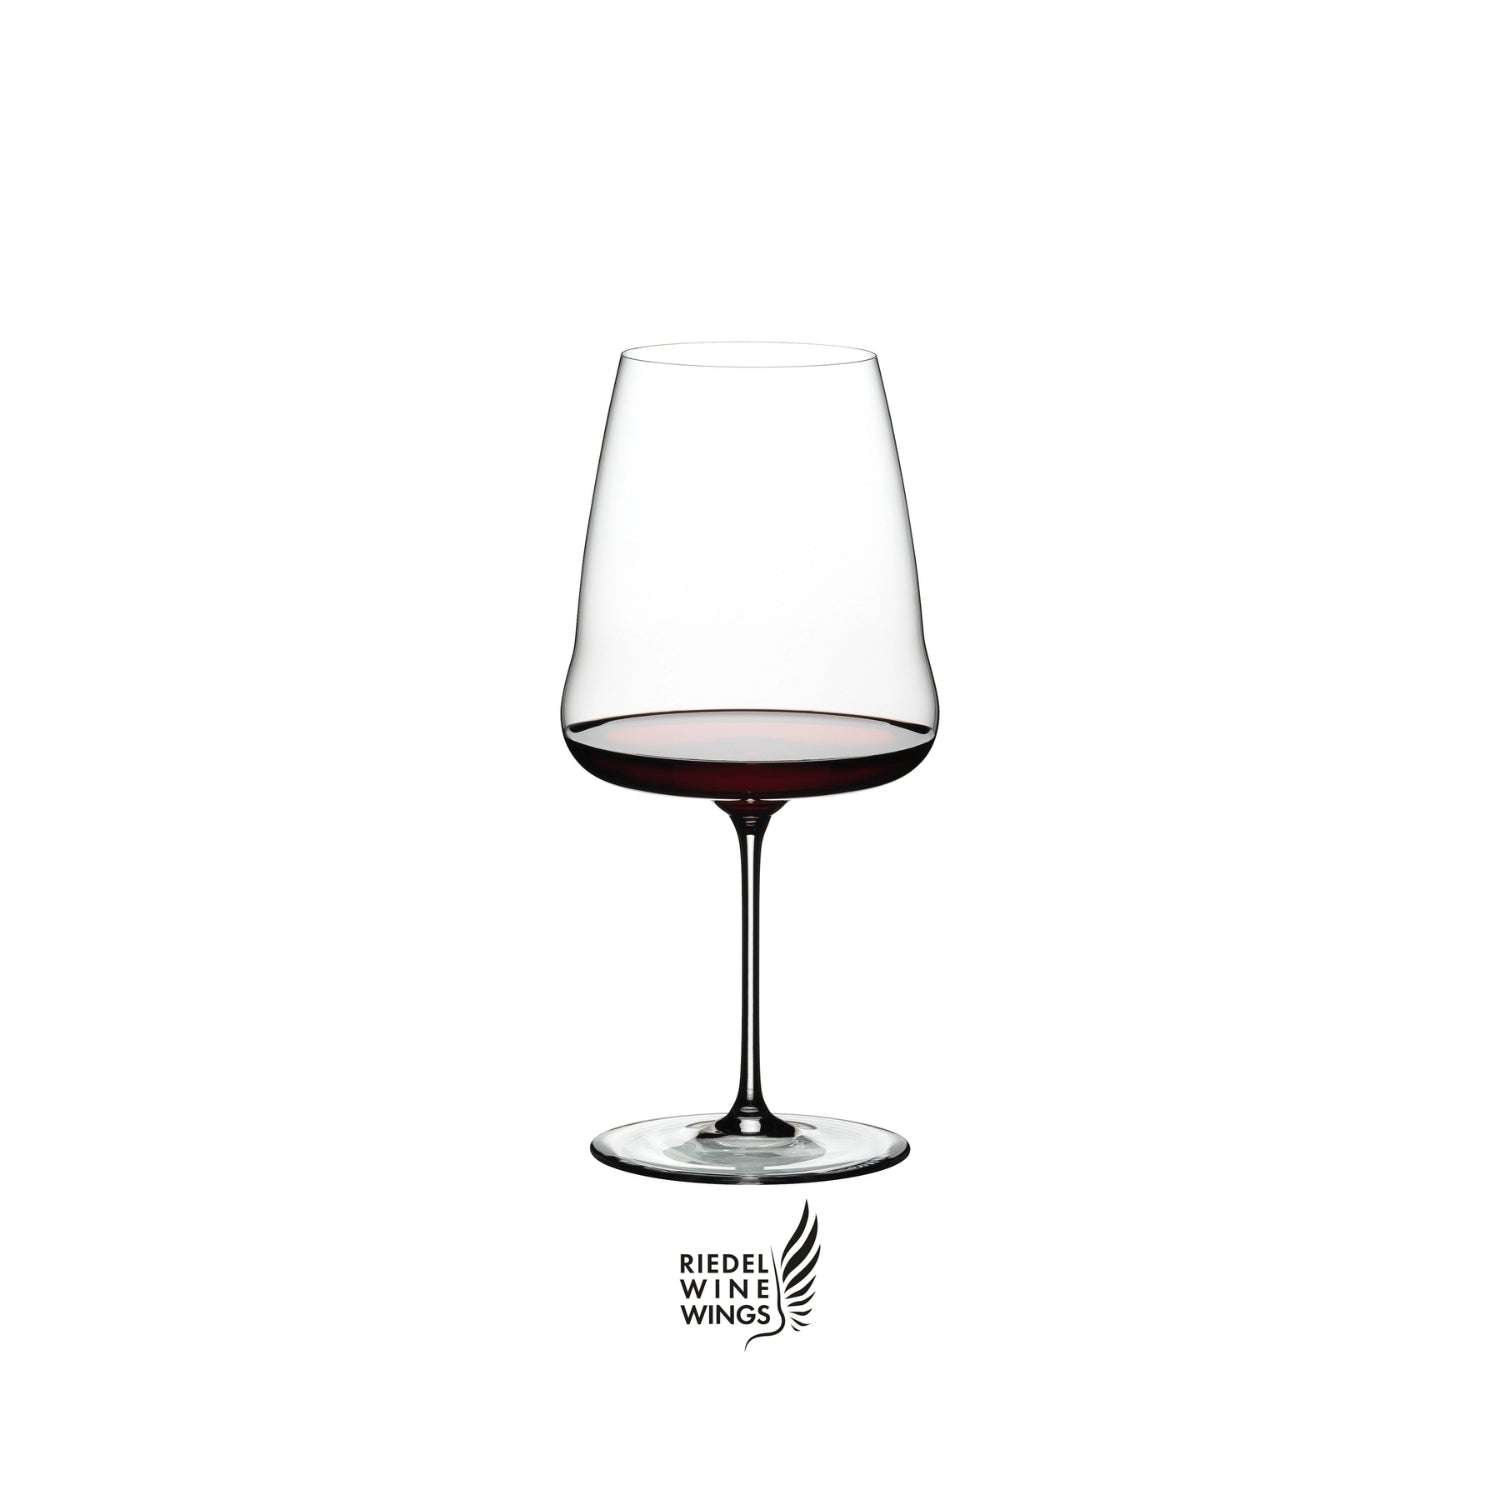 Riedel Winewings Cabernet Sauvignon, confezione singola